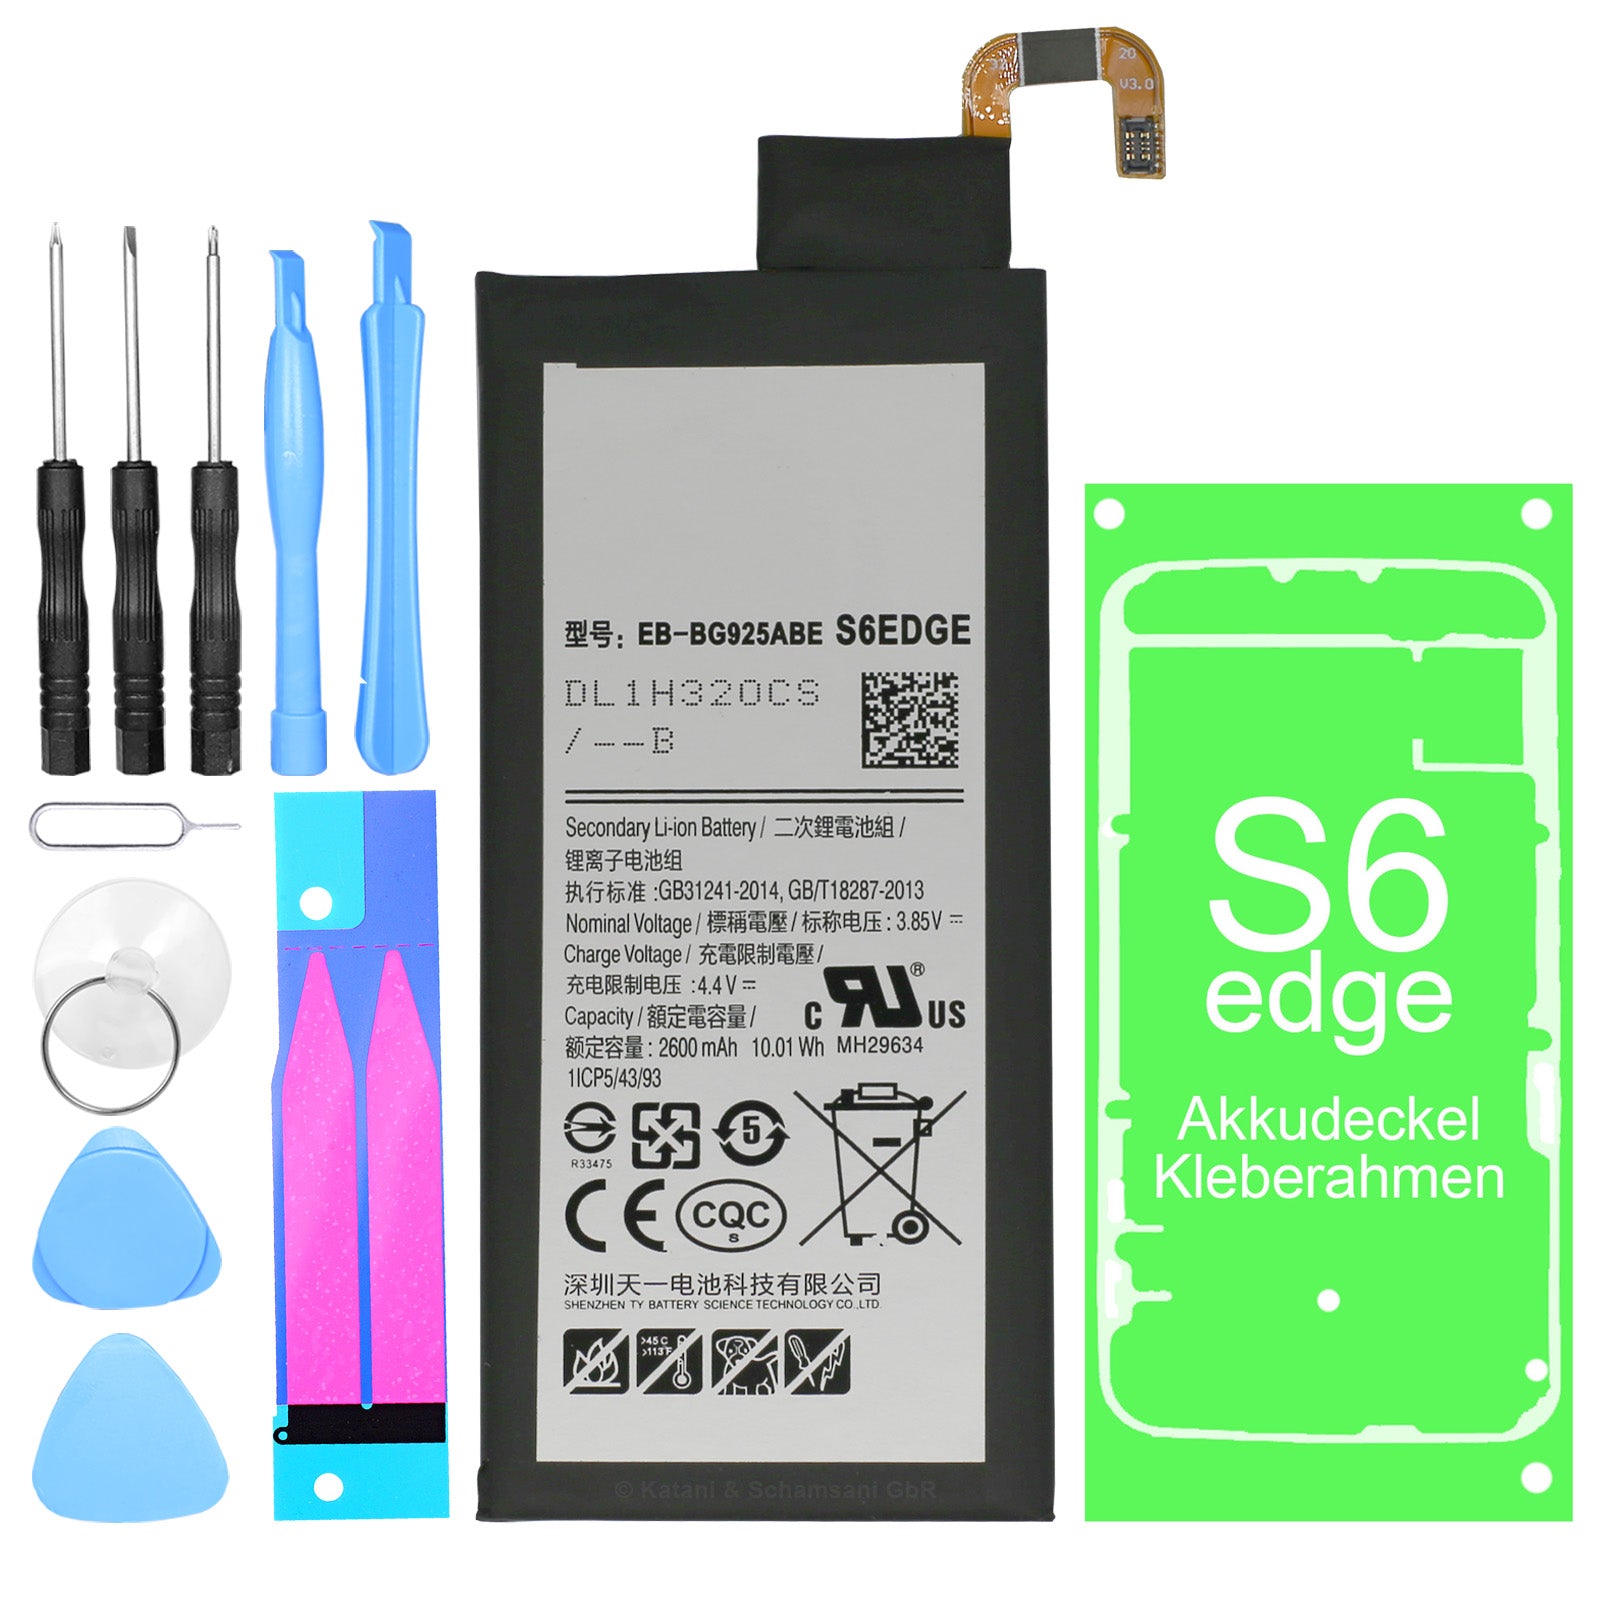 Hochwertiger Ersatzakku für Samsung Galaxy S6 Edge SM-G925F inklusive Werkzeug-Set und Kleberahmen. Ersetzt den Akku mit der Teilenummer EB-BG925ABE.